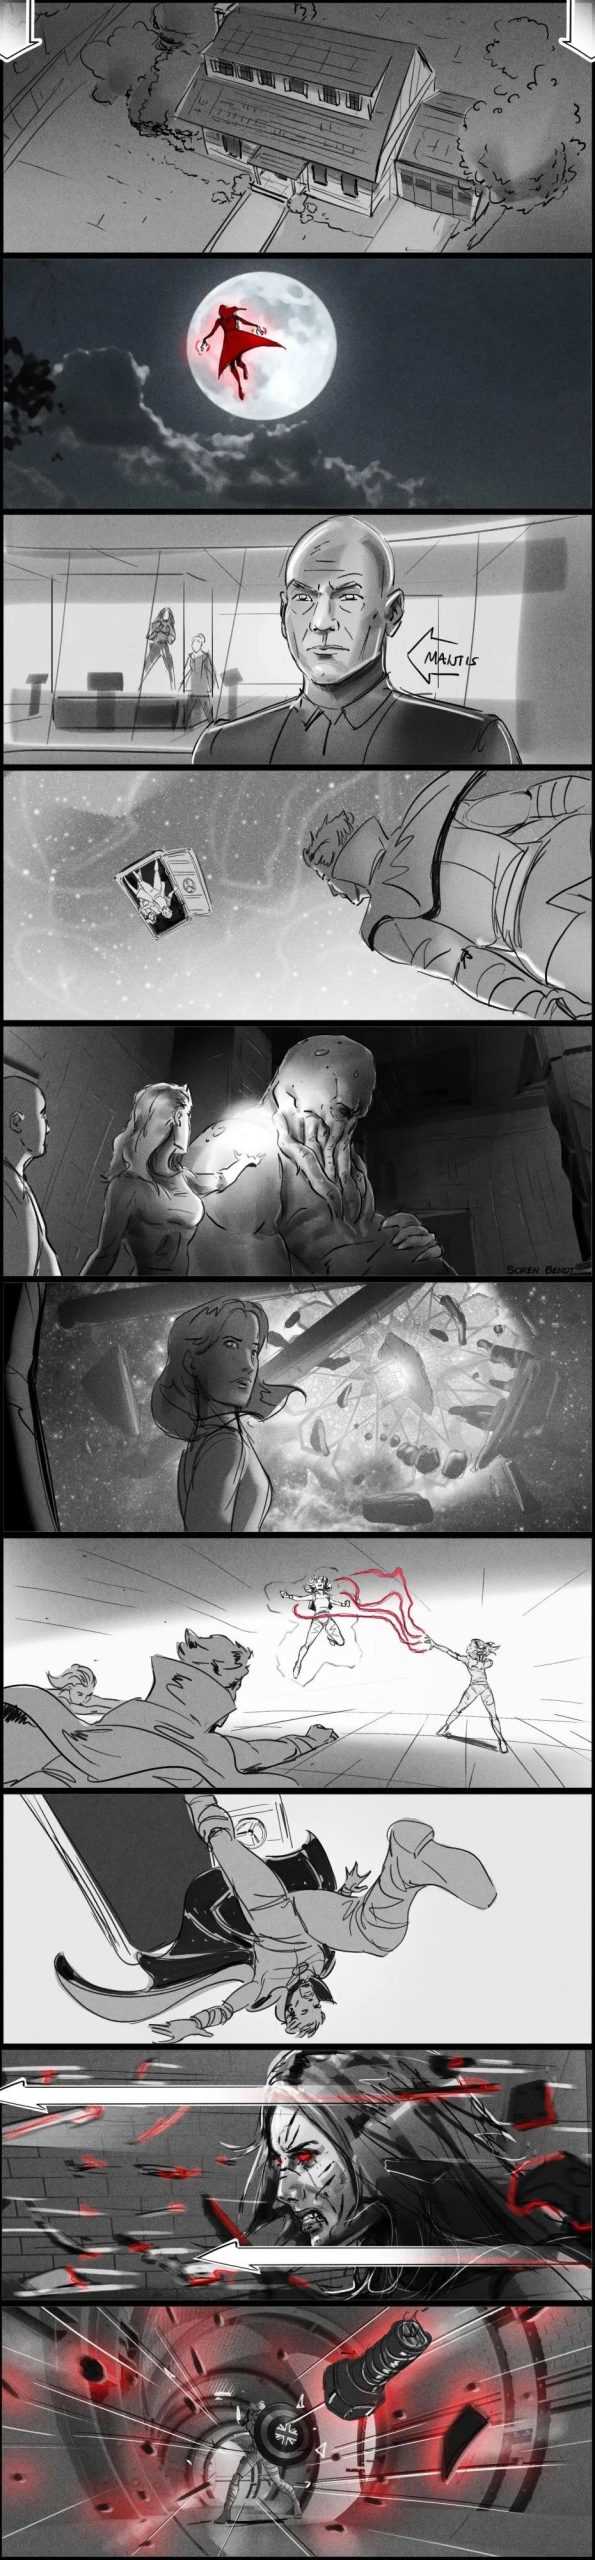 漫威电影《奇异博士2》原先的故事设定，原本有钢铁侠的-插图5